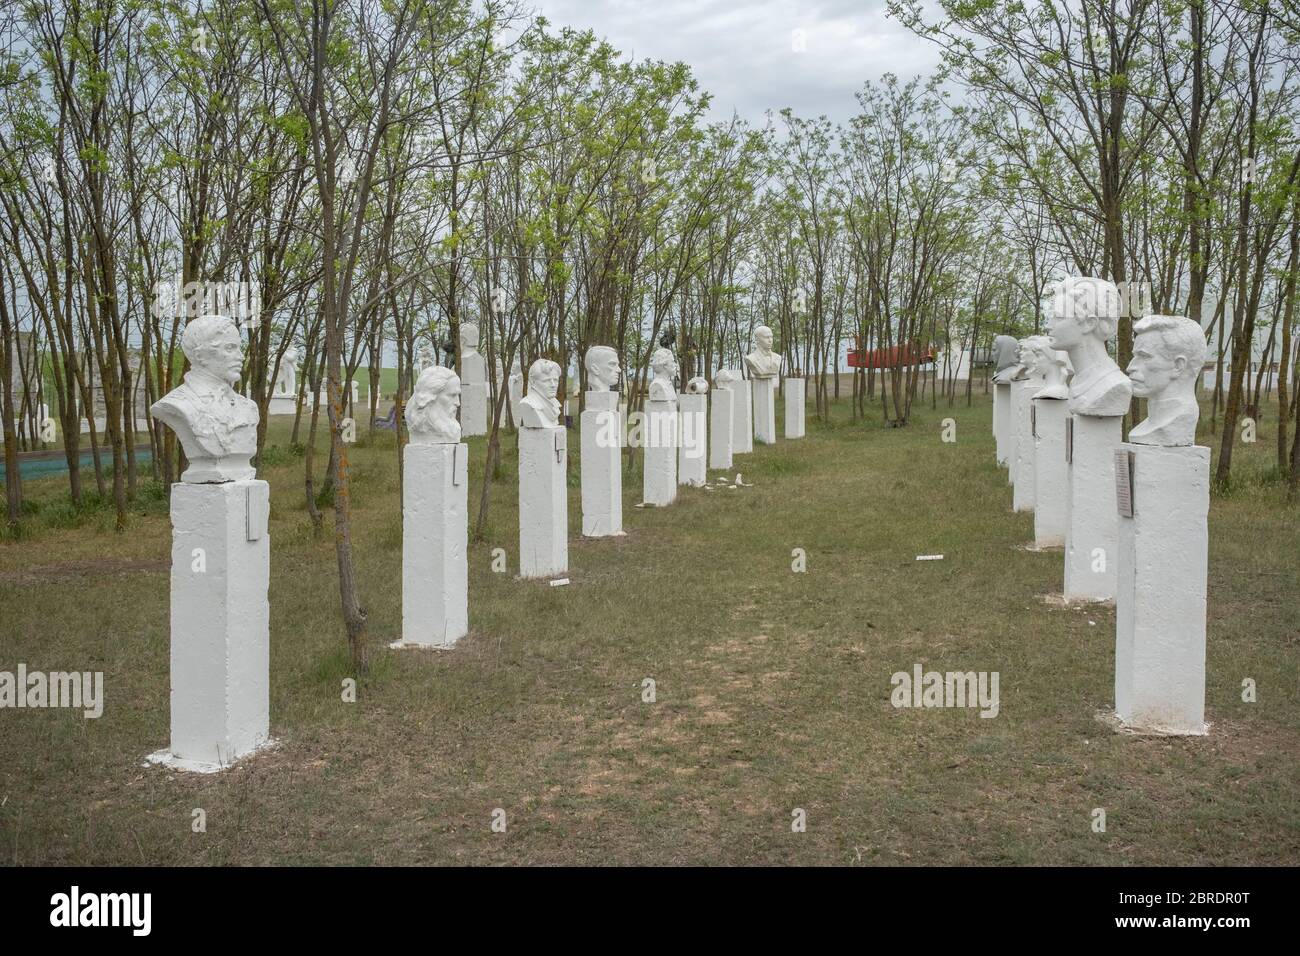 Groupe de bustes sculptural au Musée du réalisme socialiste. Frumushika Nova, Oblast d'Odessa, Ukraine, Europe de l'est Banque D'Images